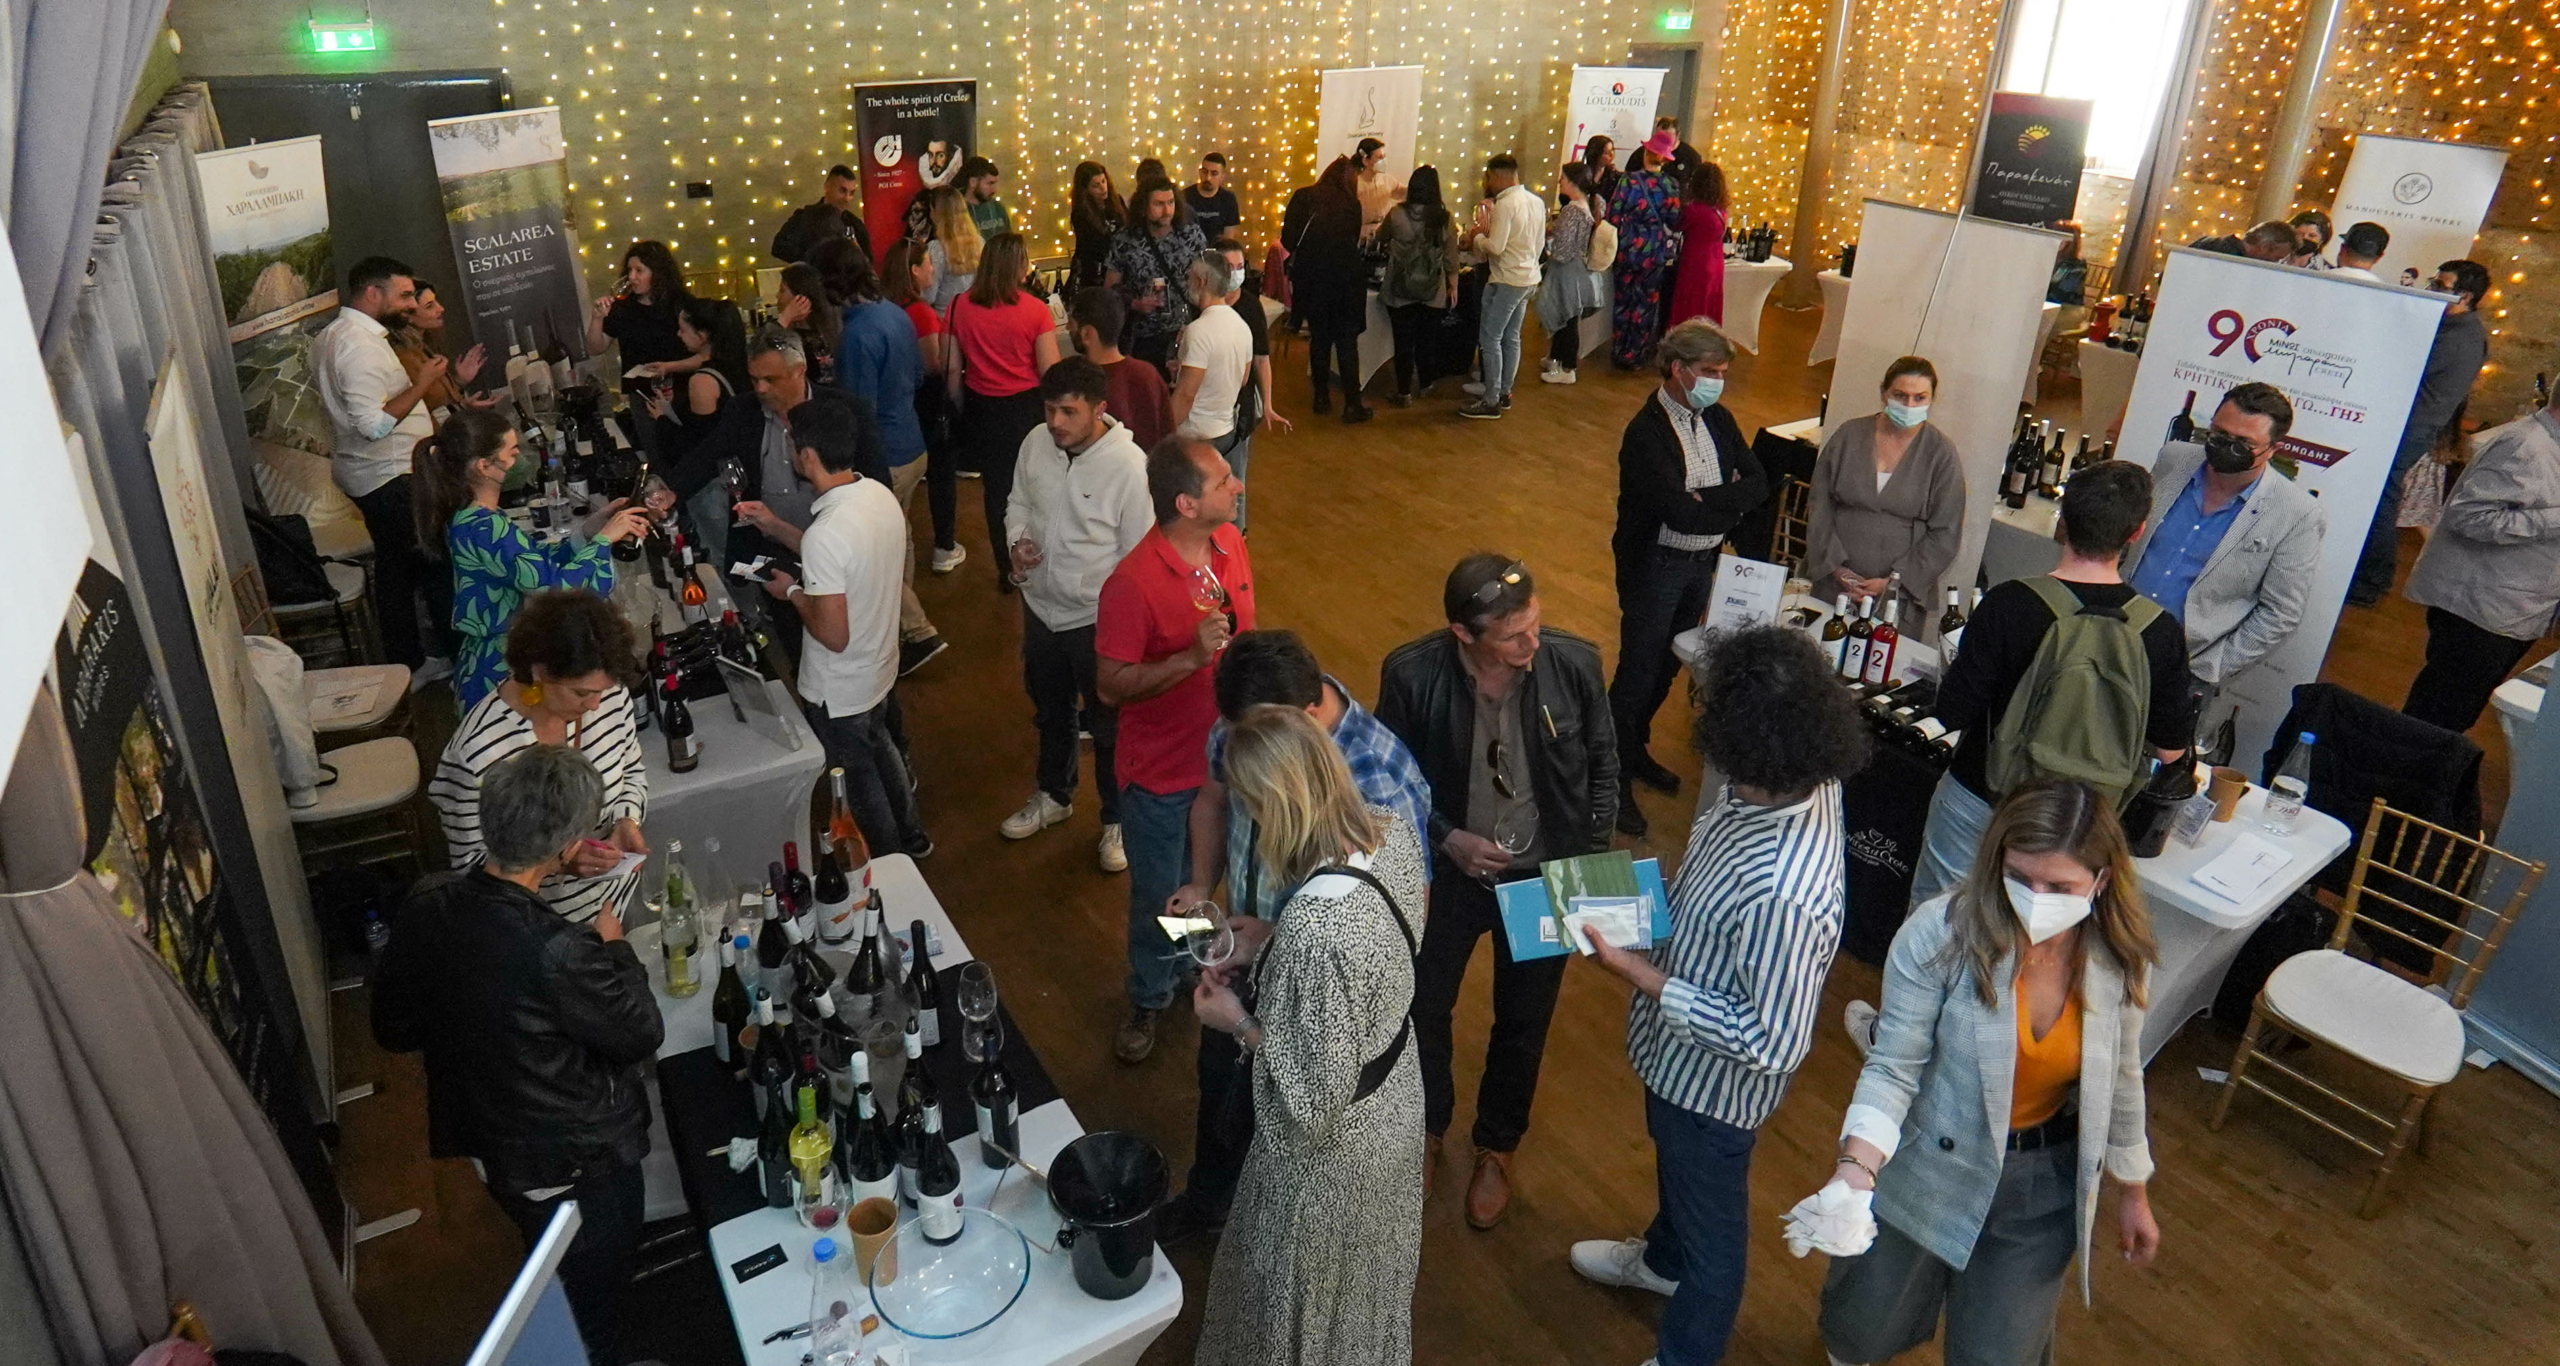 Πλήθος κόσμου γνώρισε το Κρητικό κρασί στην Έκθεση Κρητικού κρασιού «ΟιΝοτικά», στην Λεμεσό της Κύπρου, με την υποστήριξη της Περιφέρειας Κρήτης